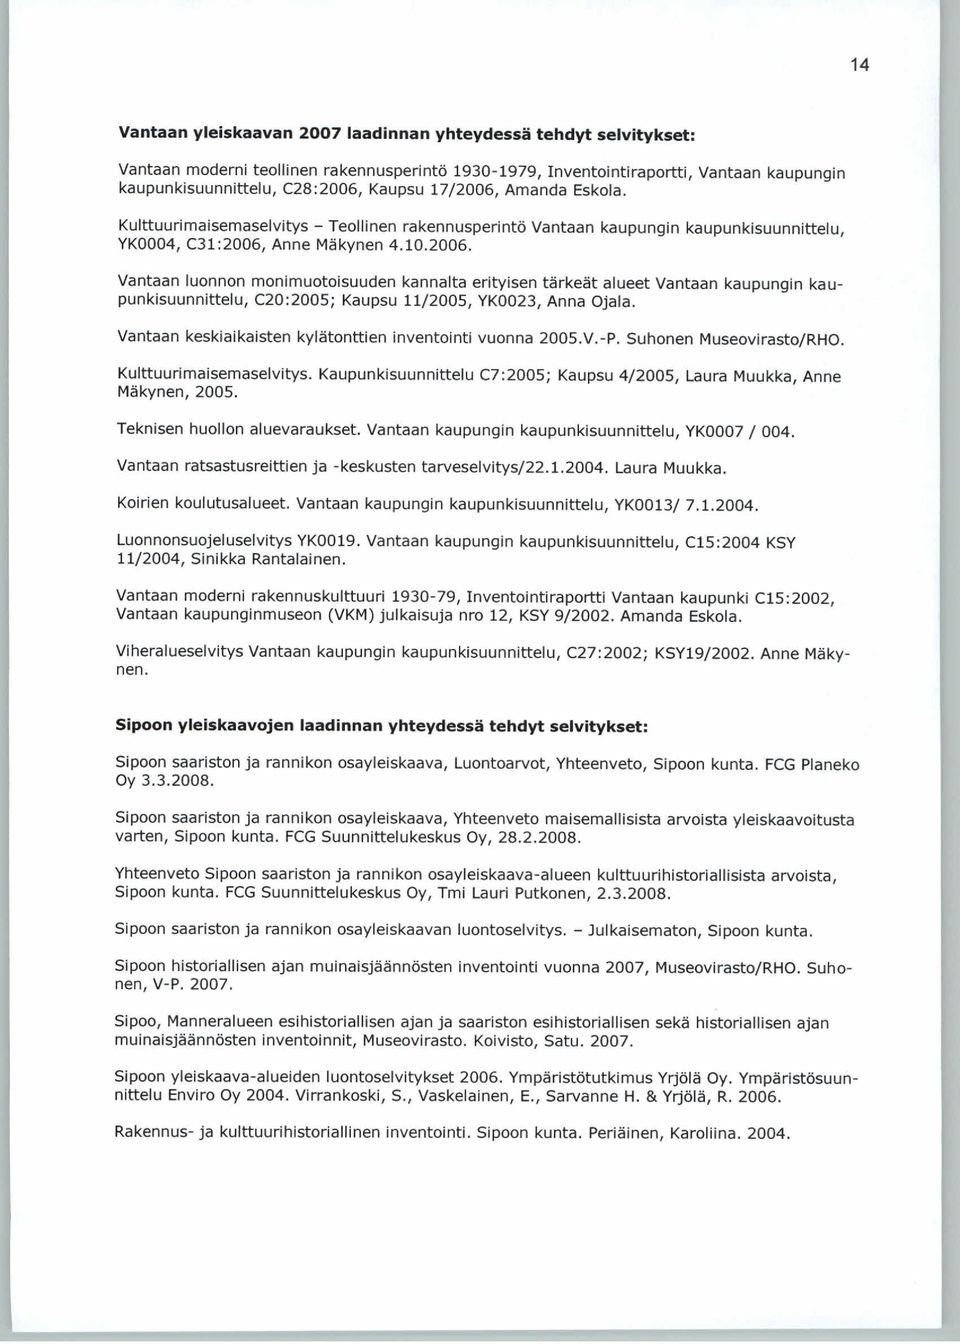 Vantaan keskiaikaisten kylätonttien inventointi vuonna 2005.V.-P. Suhonen Museovirasto/RHO. Kulttuurimaisemaselvitys. Kaupunkisuunnittelu C7:2005; Kaupsu 4/2005, Laura Muukka, Anne Mäkynen, 2005.